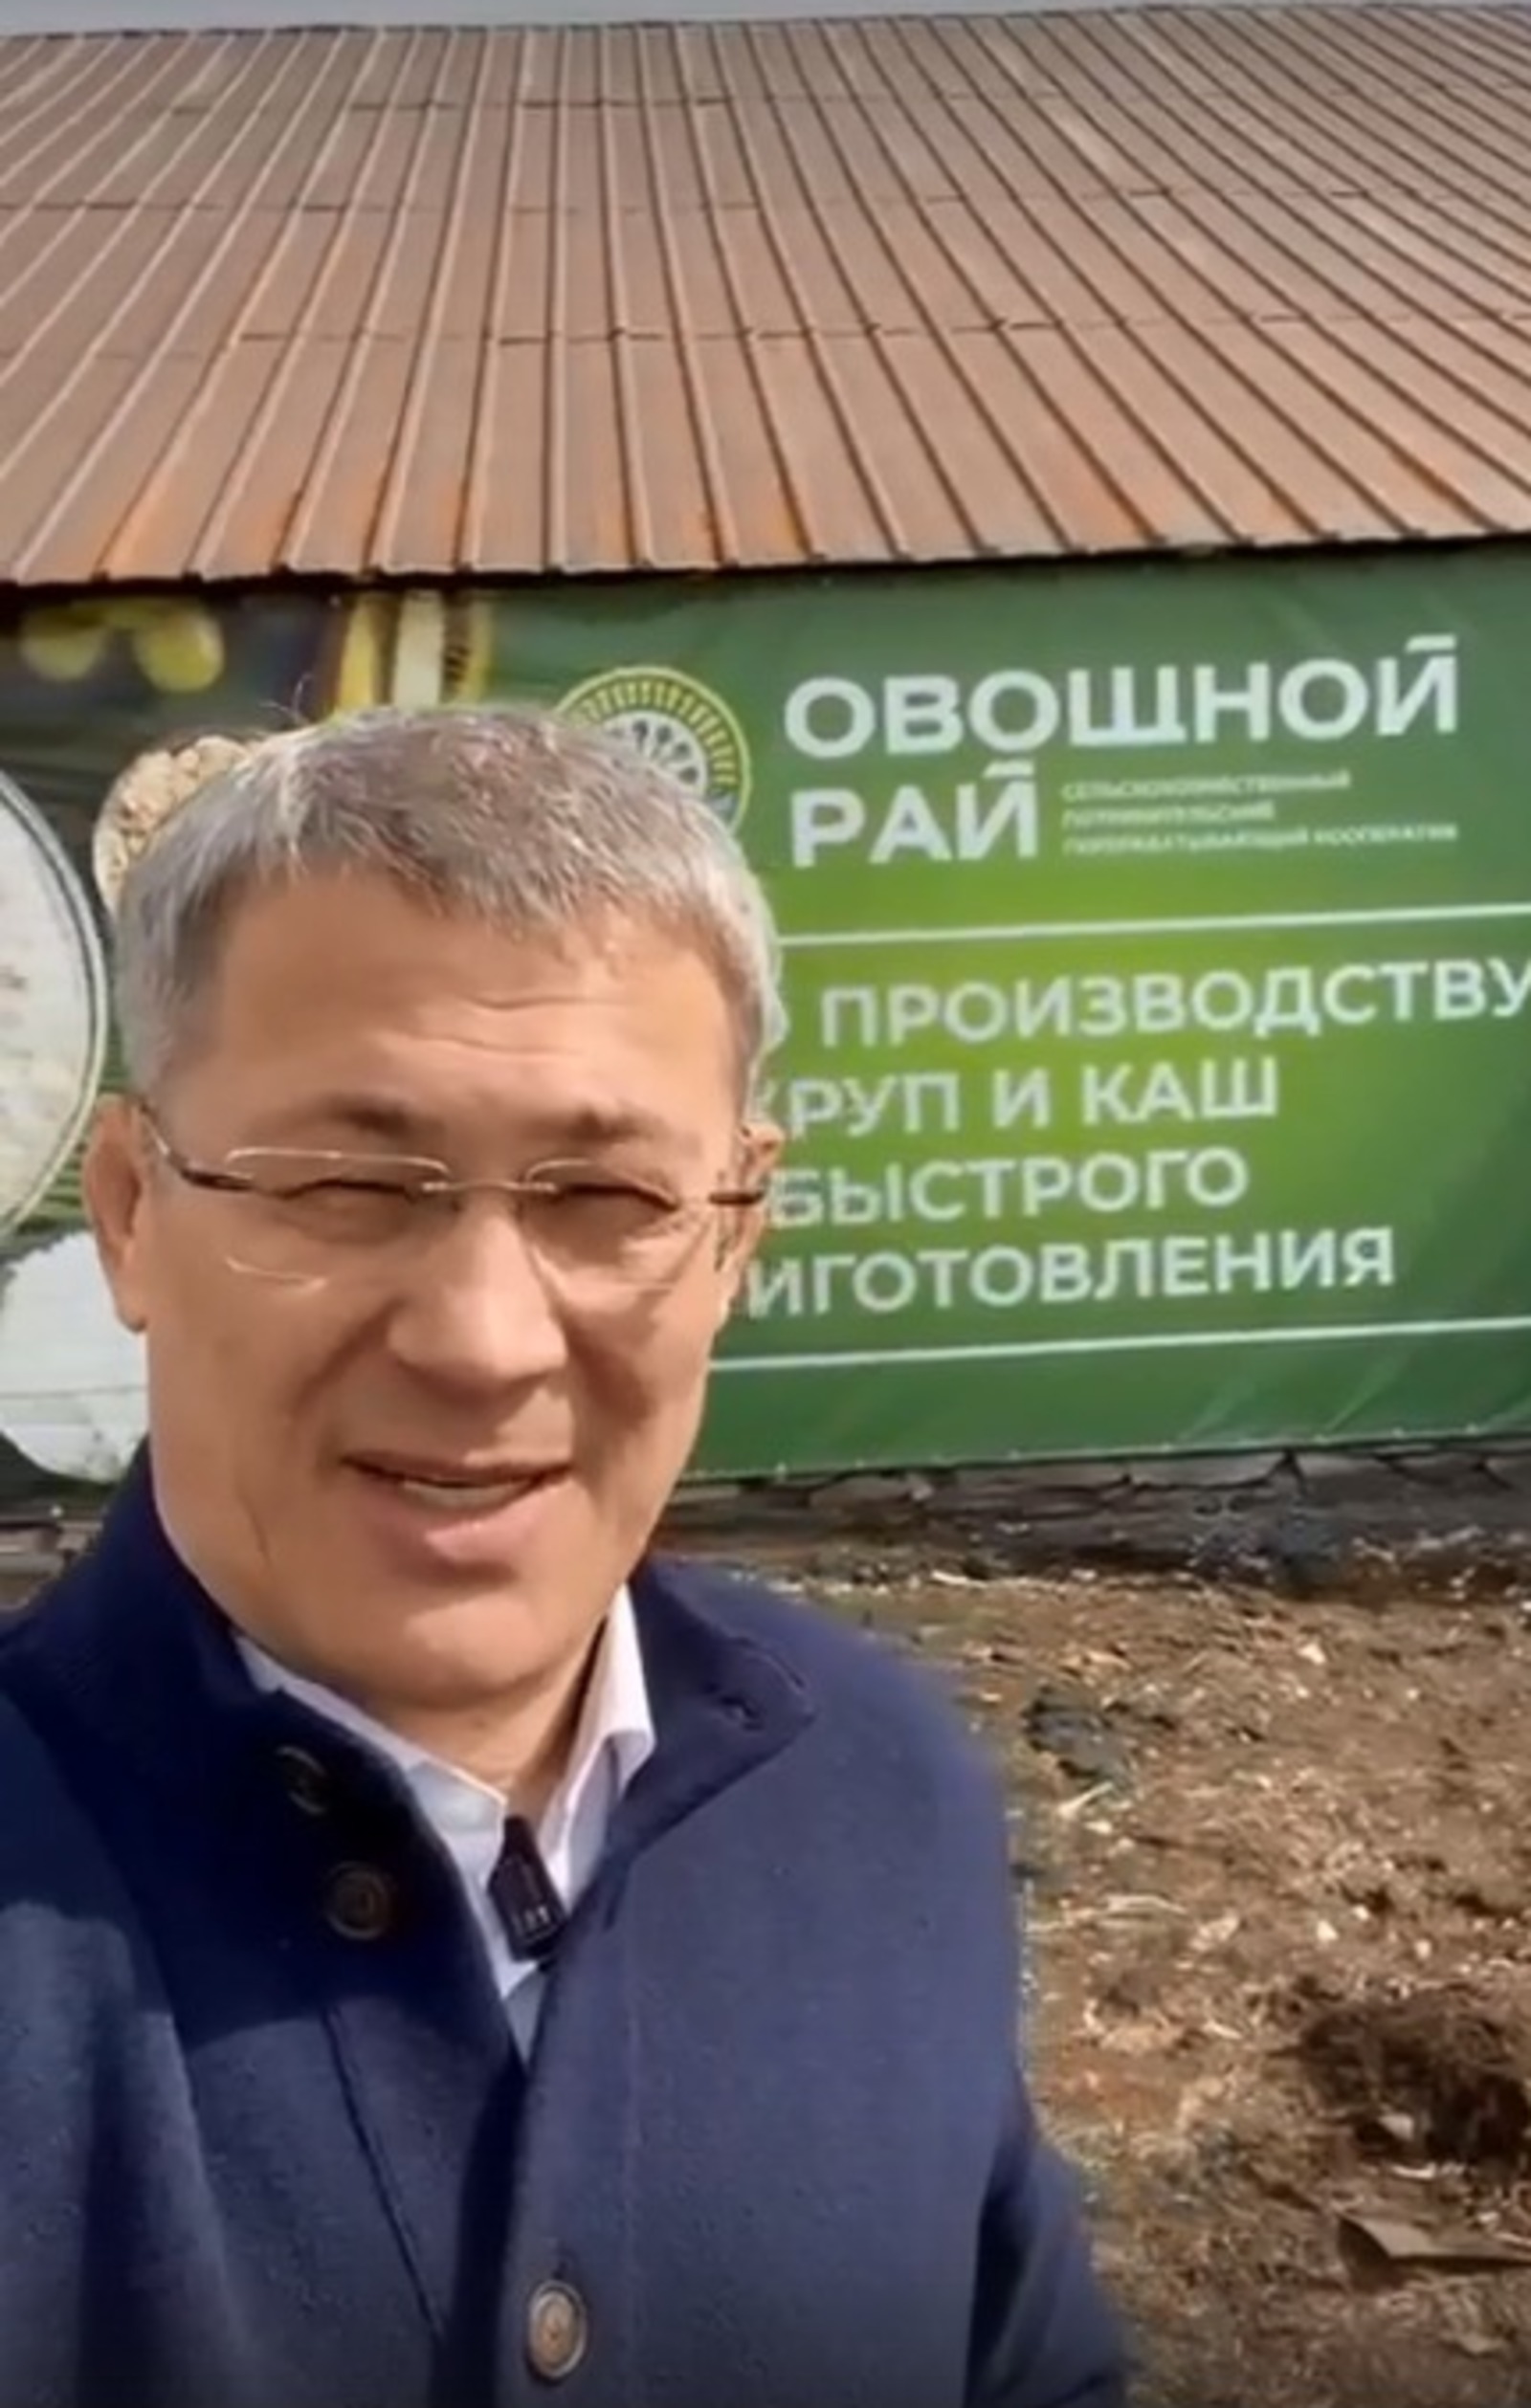 Vk, личная страница Радия Хабирова, скрин видео.